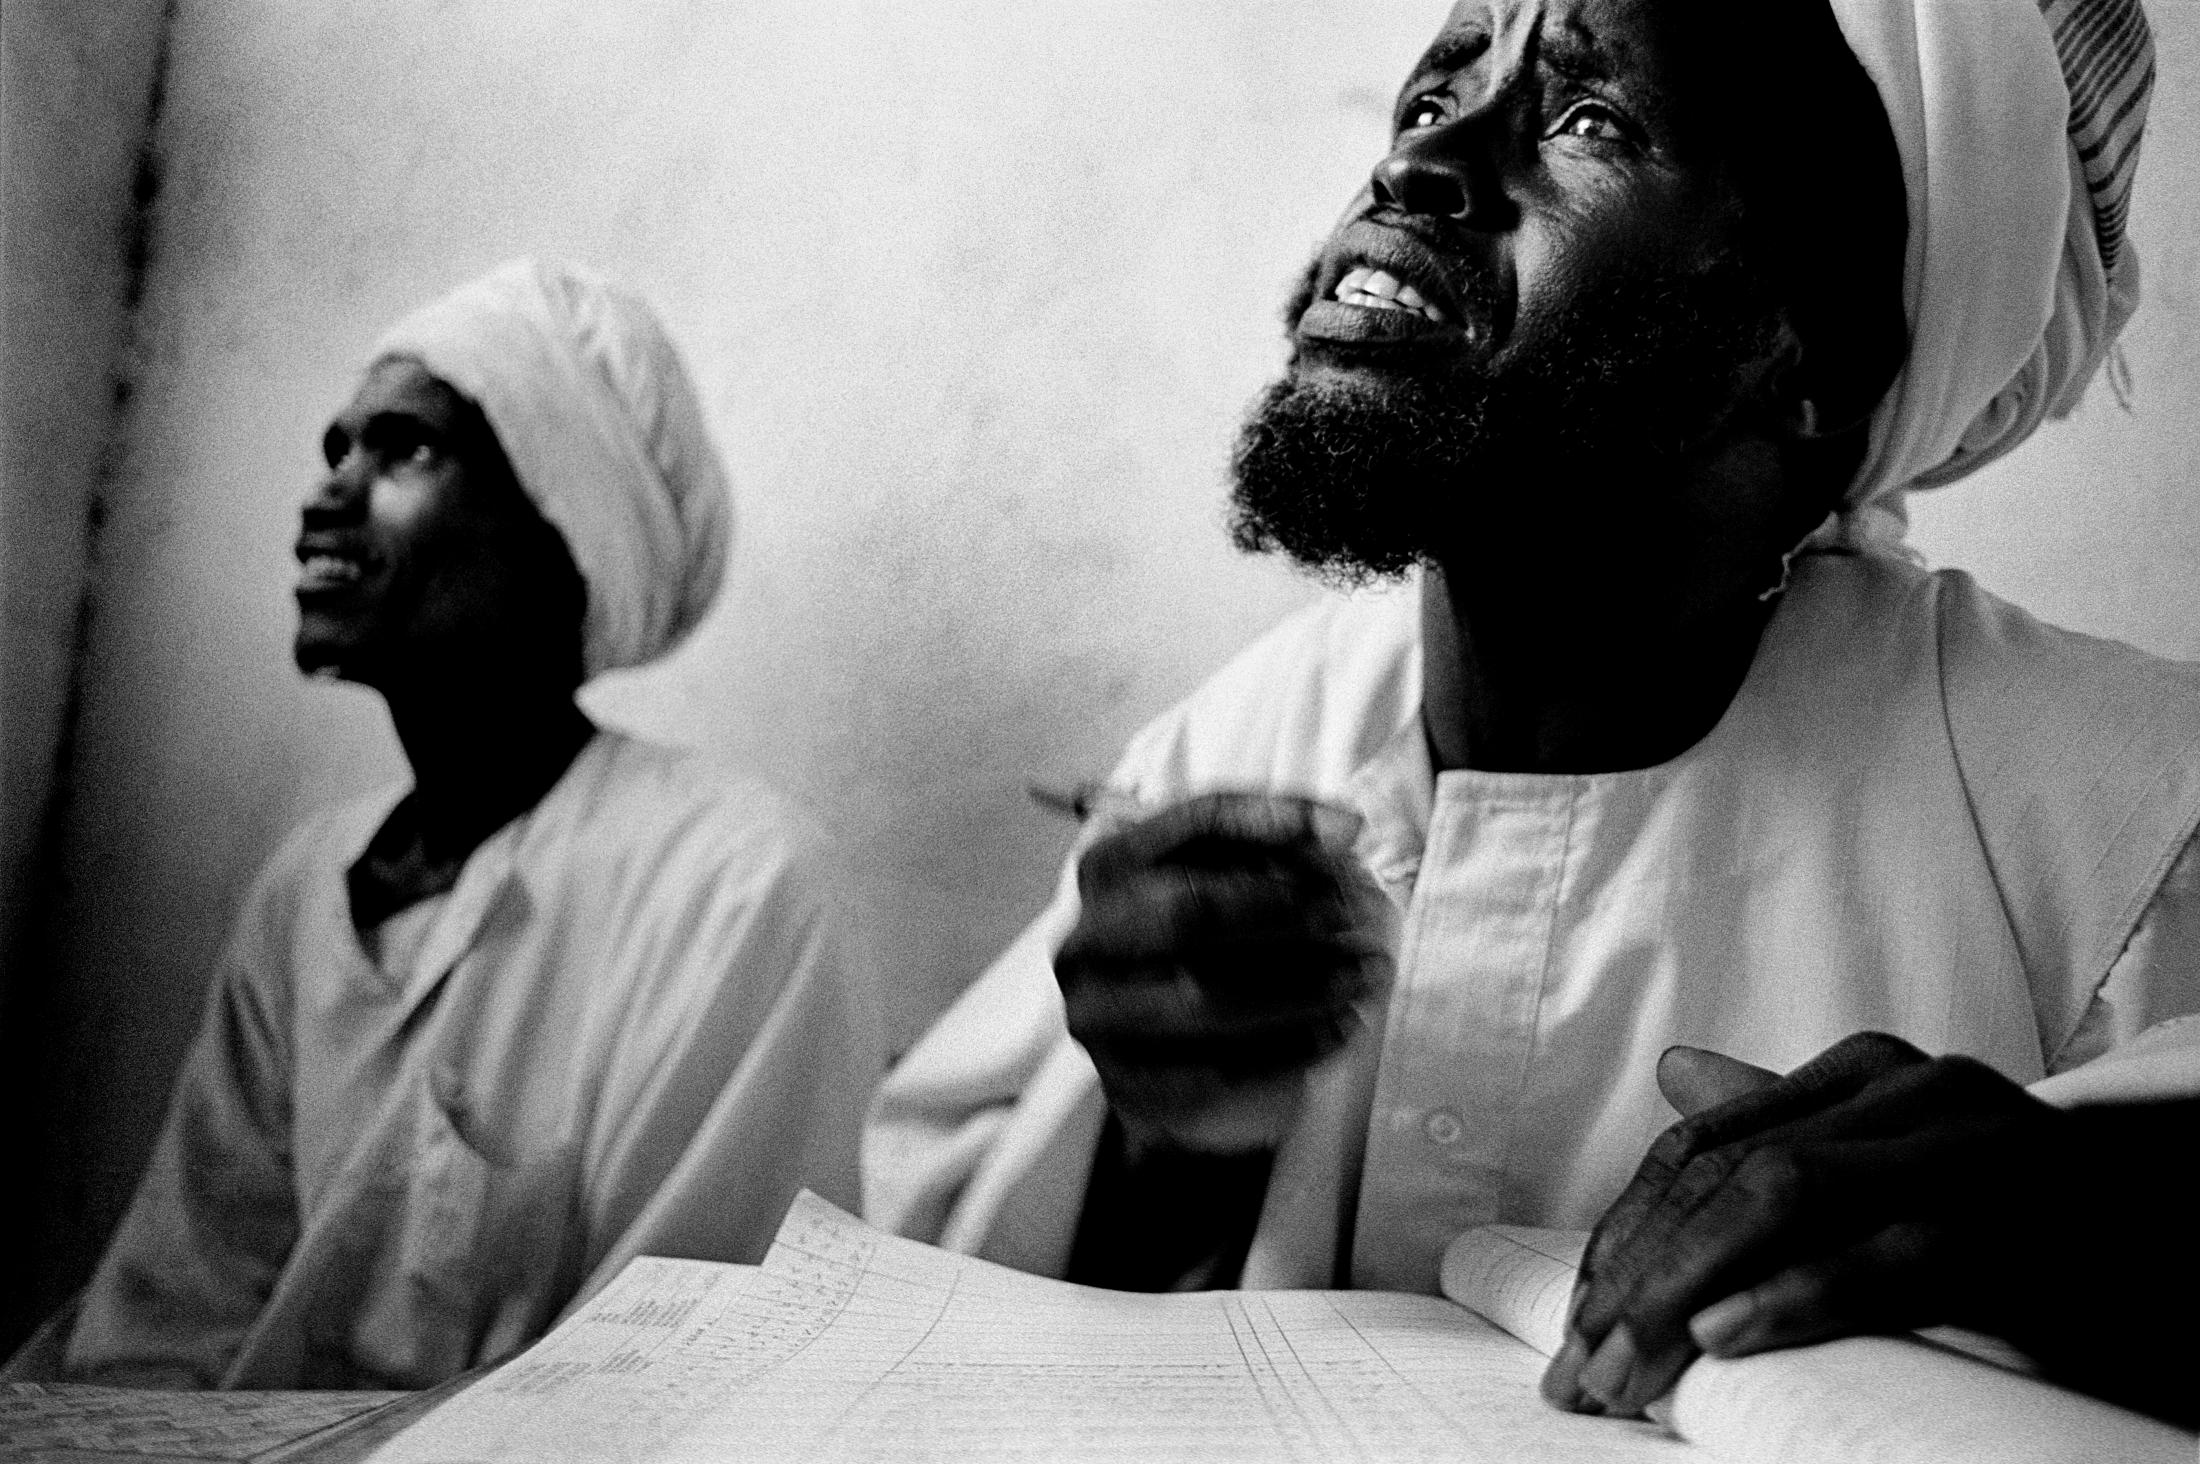 Darfur - SUDAN Golo, Darfur A nurse recording the names of...